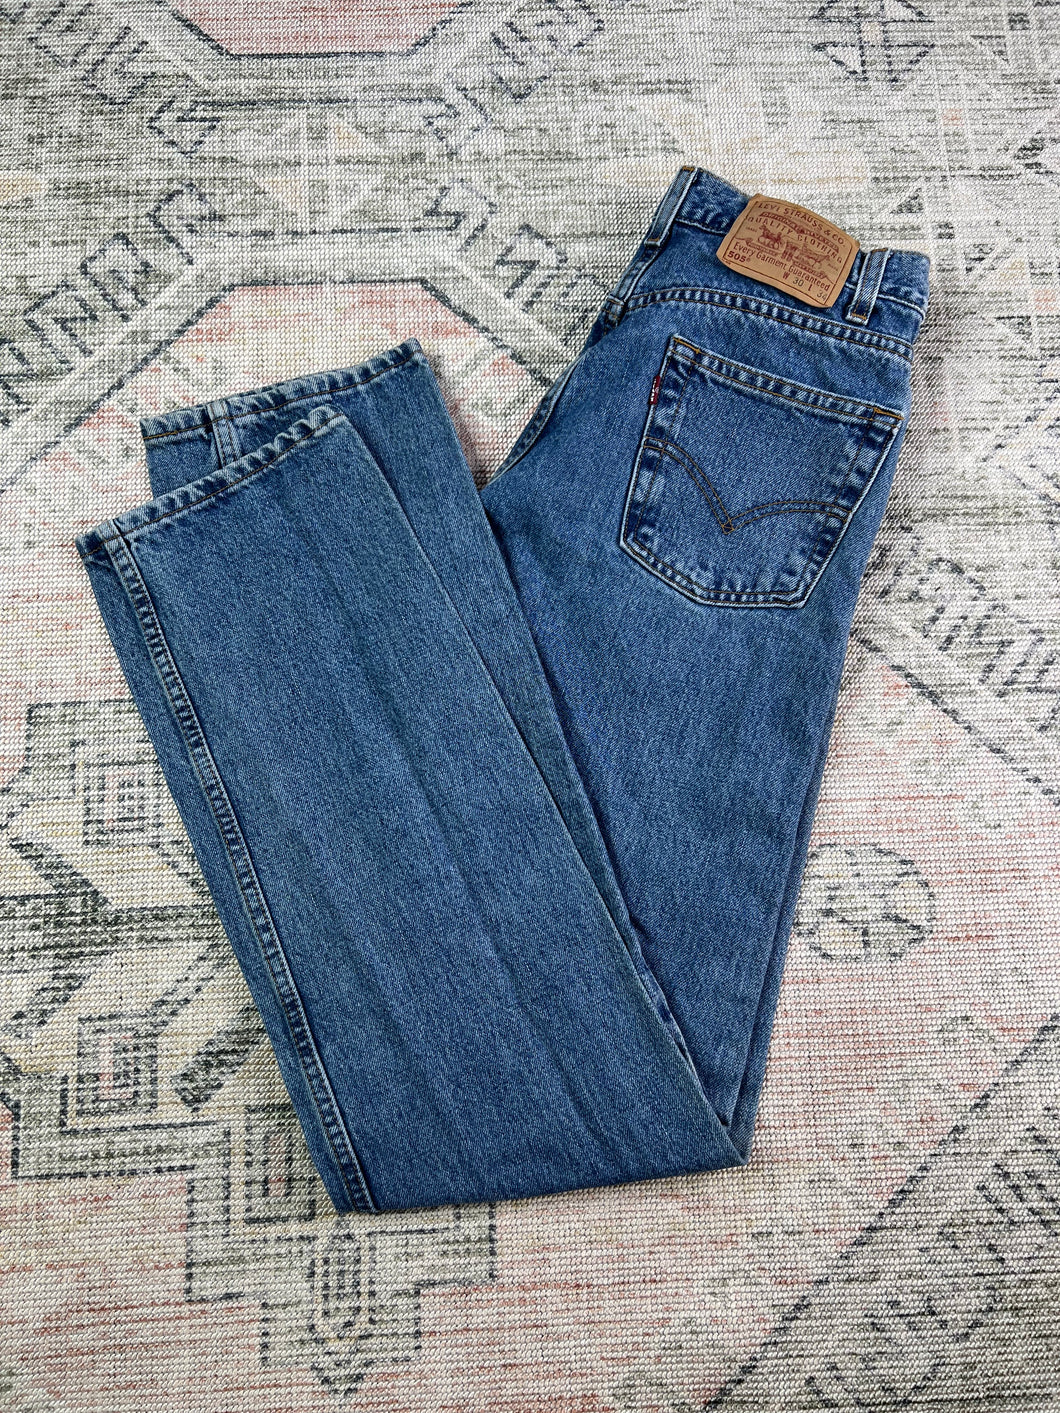 Vintage 90s Levi’s 505 Jeans (30x34)